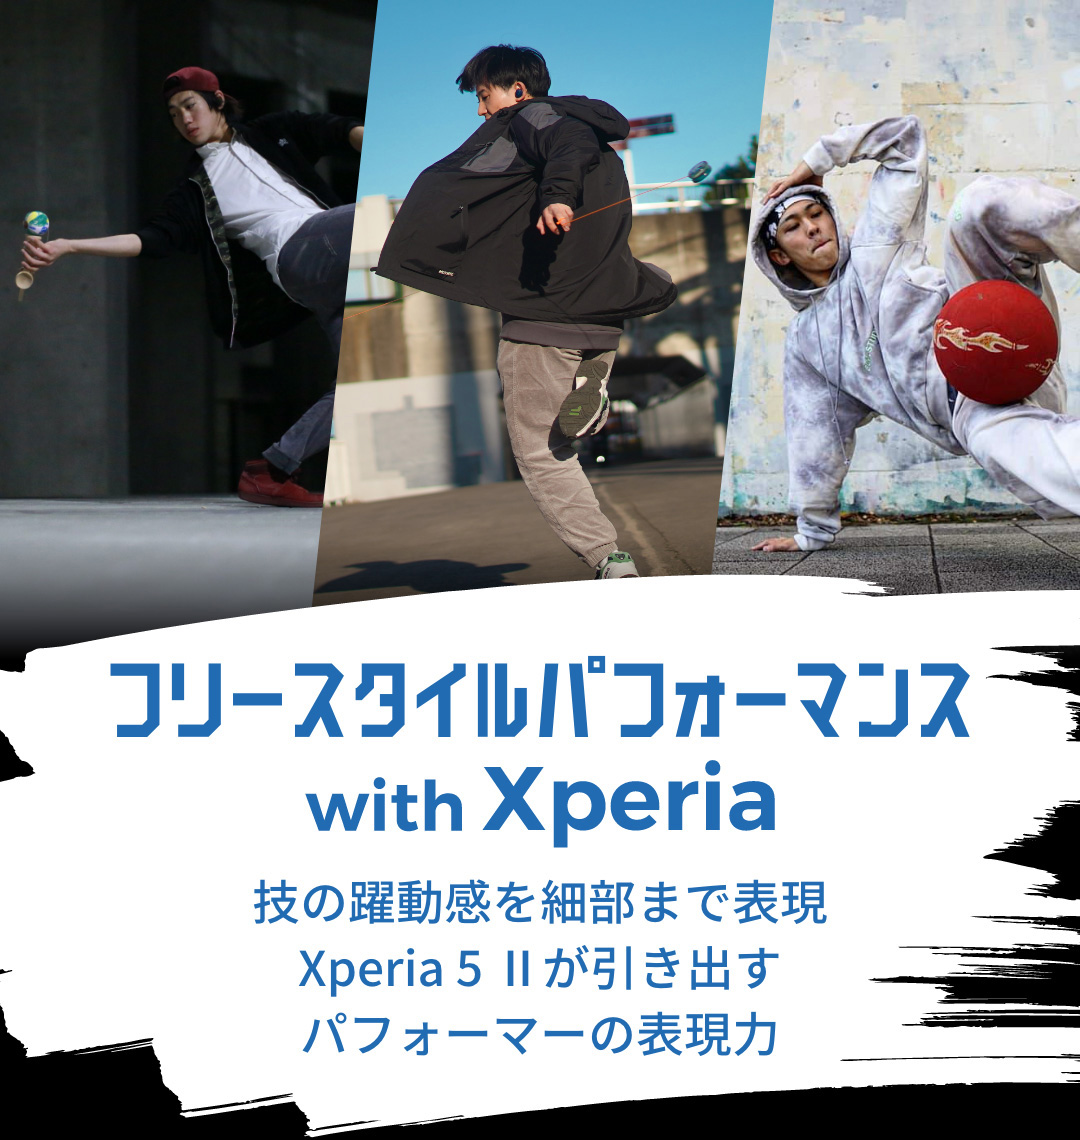 フリースタイルパフォーマンス with Xperia 技の躍動感を細部まで表現Xperia 5 IIが引き出すパフォーマーの表現力